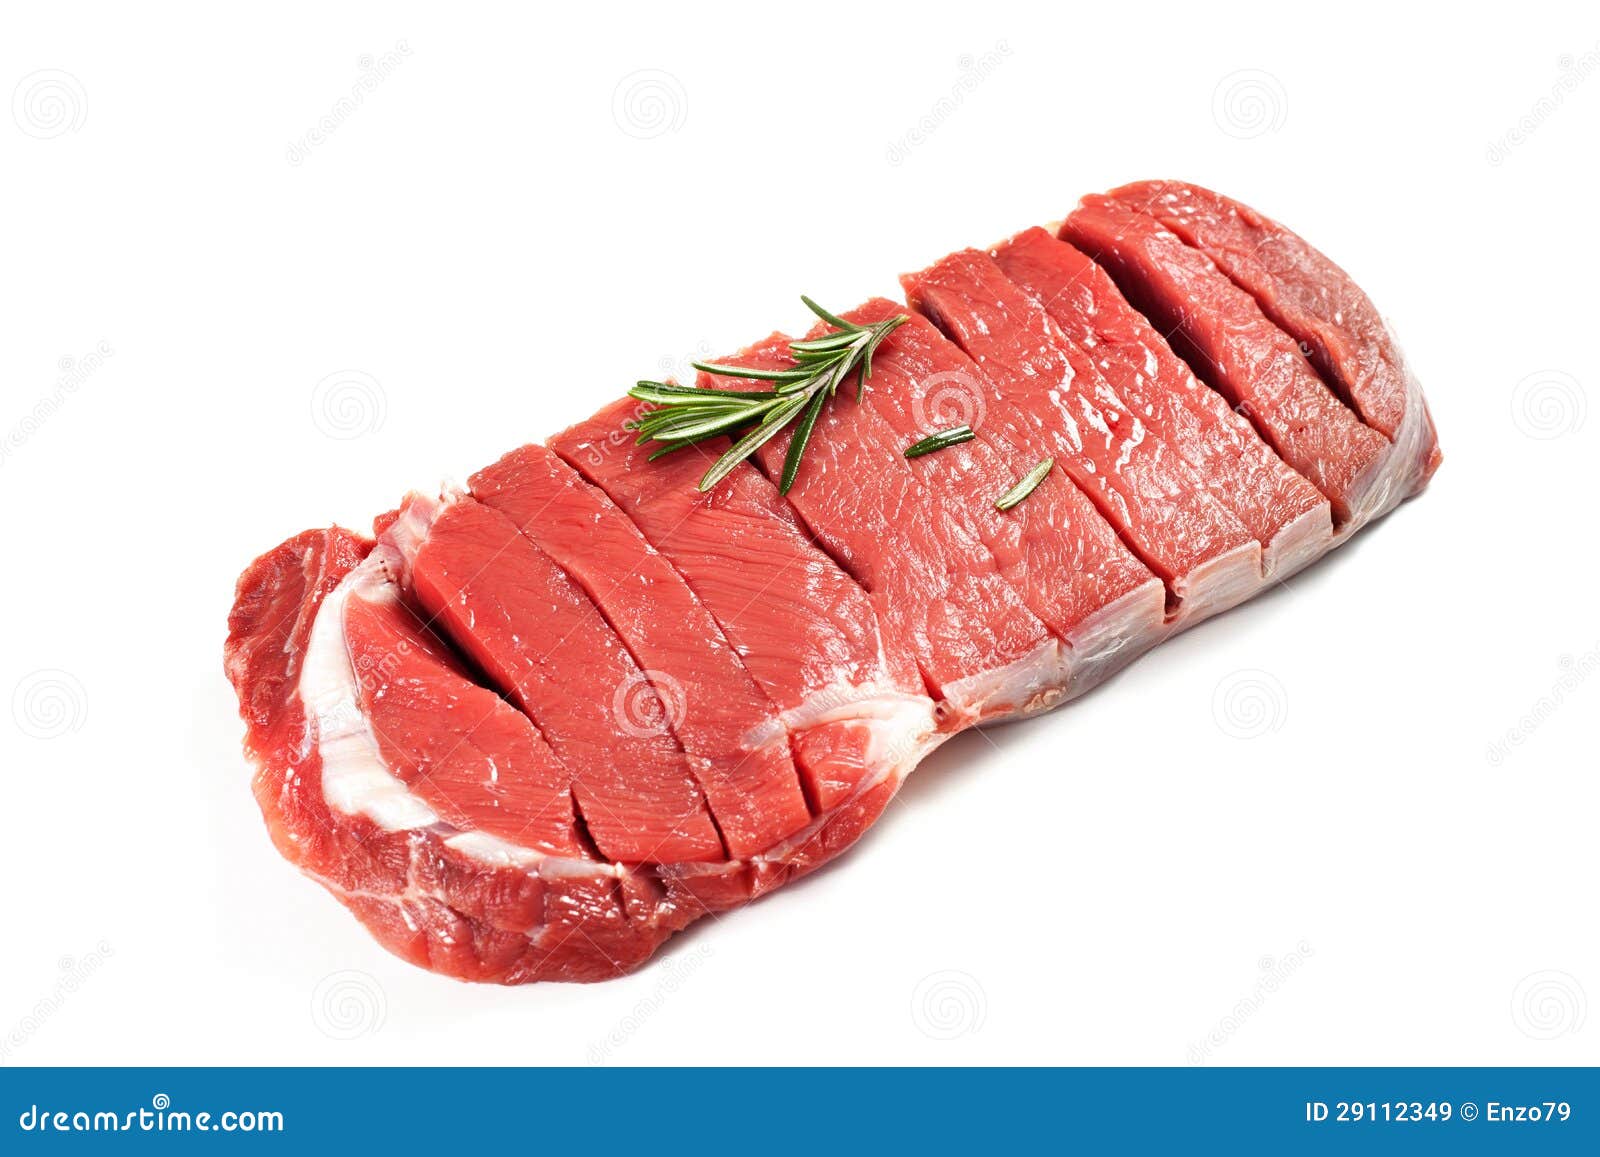 bovine meat